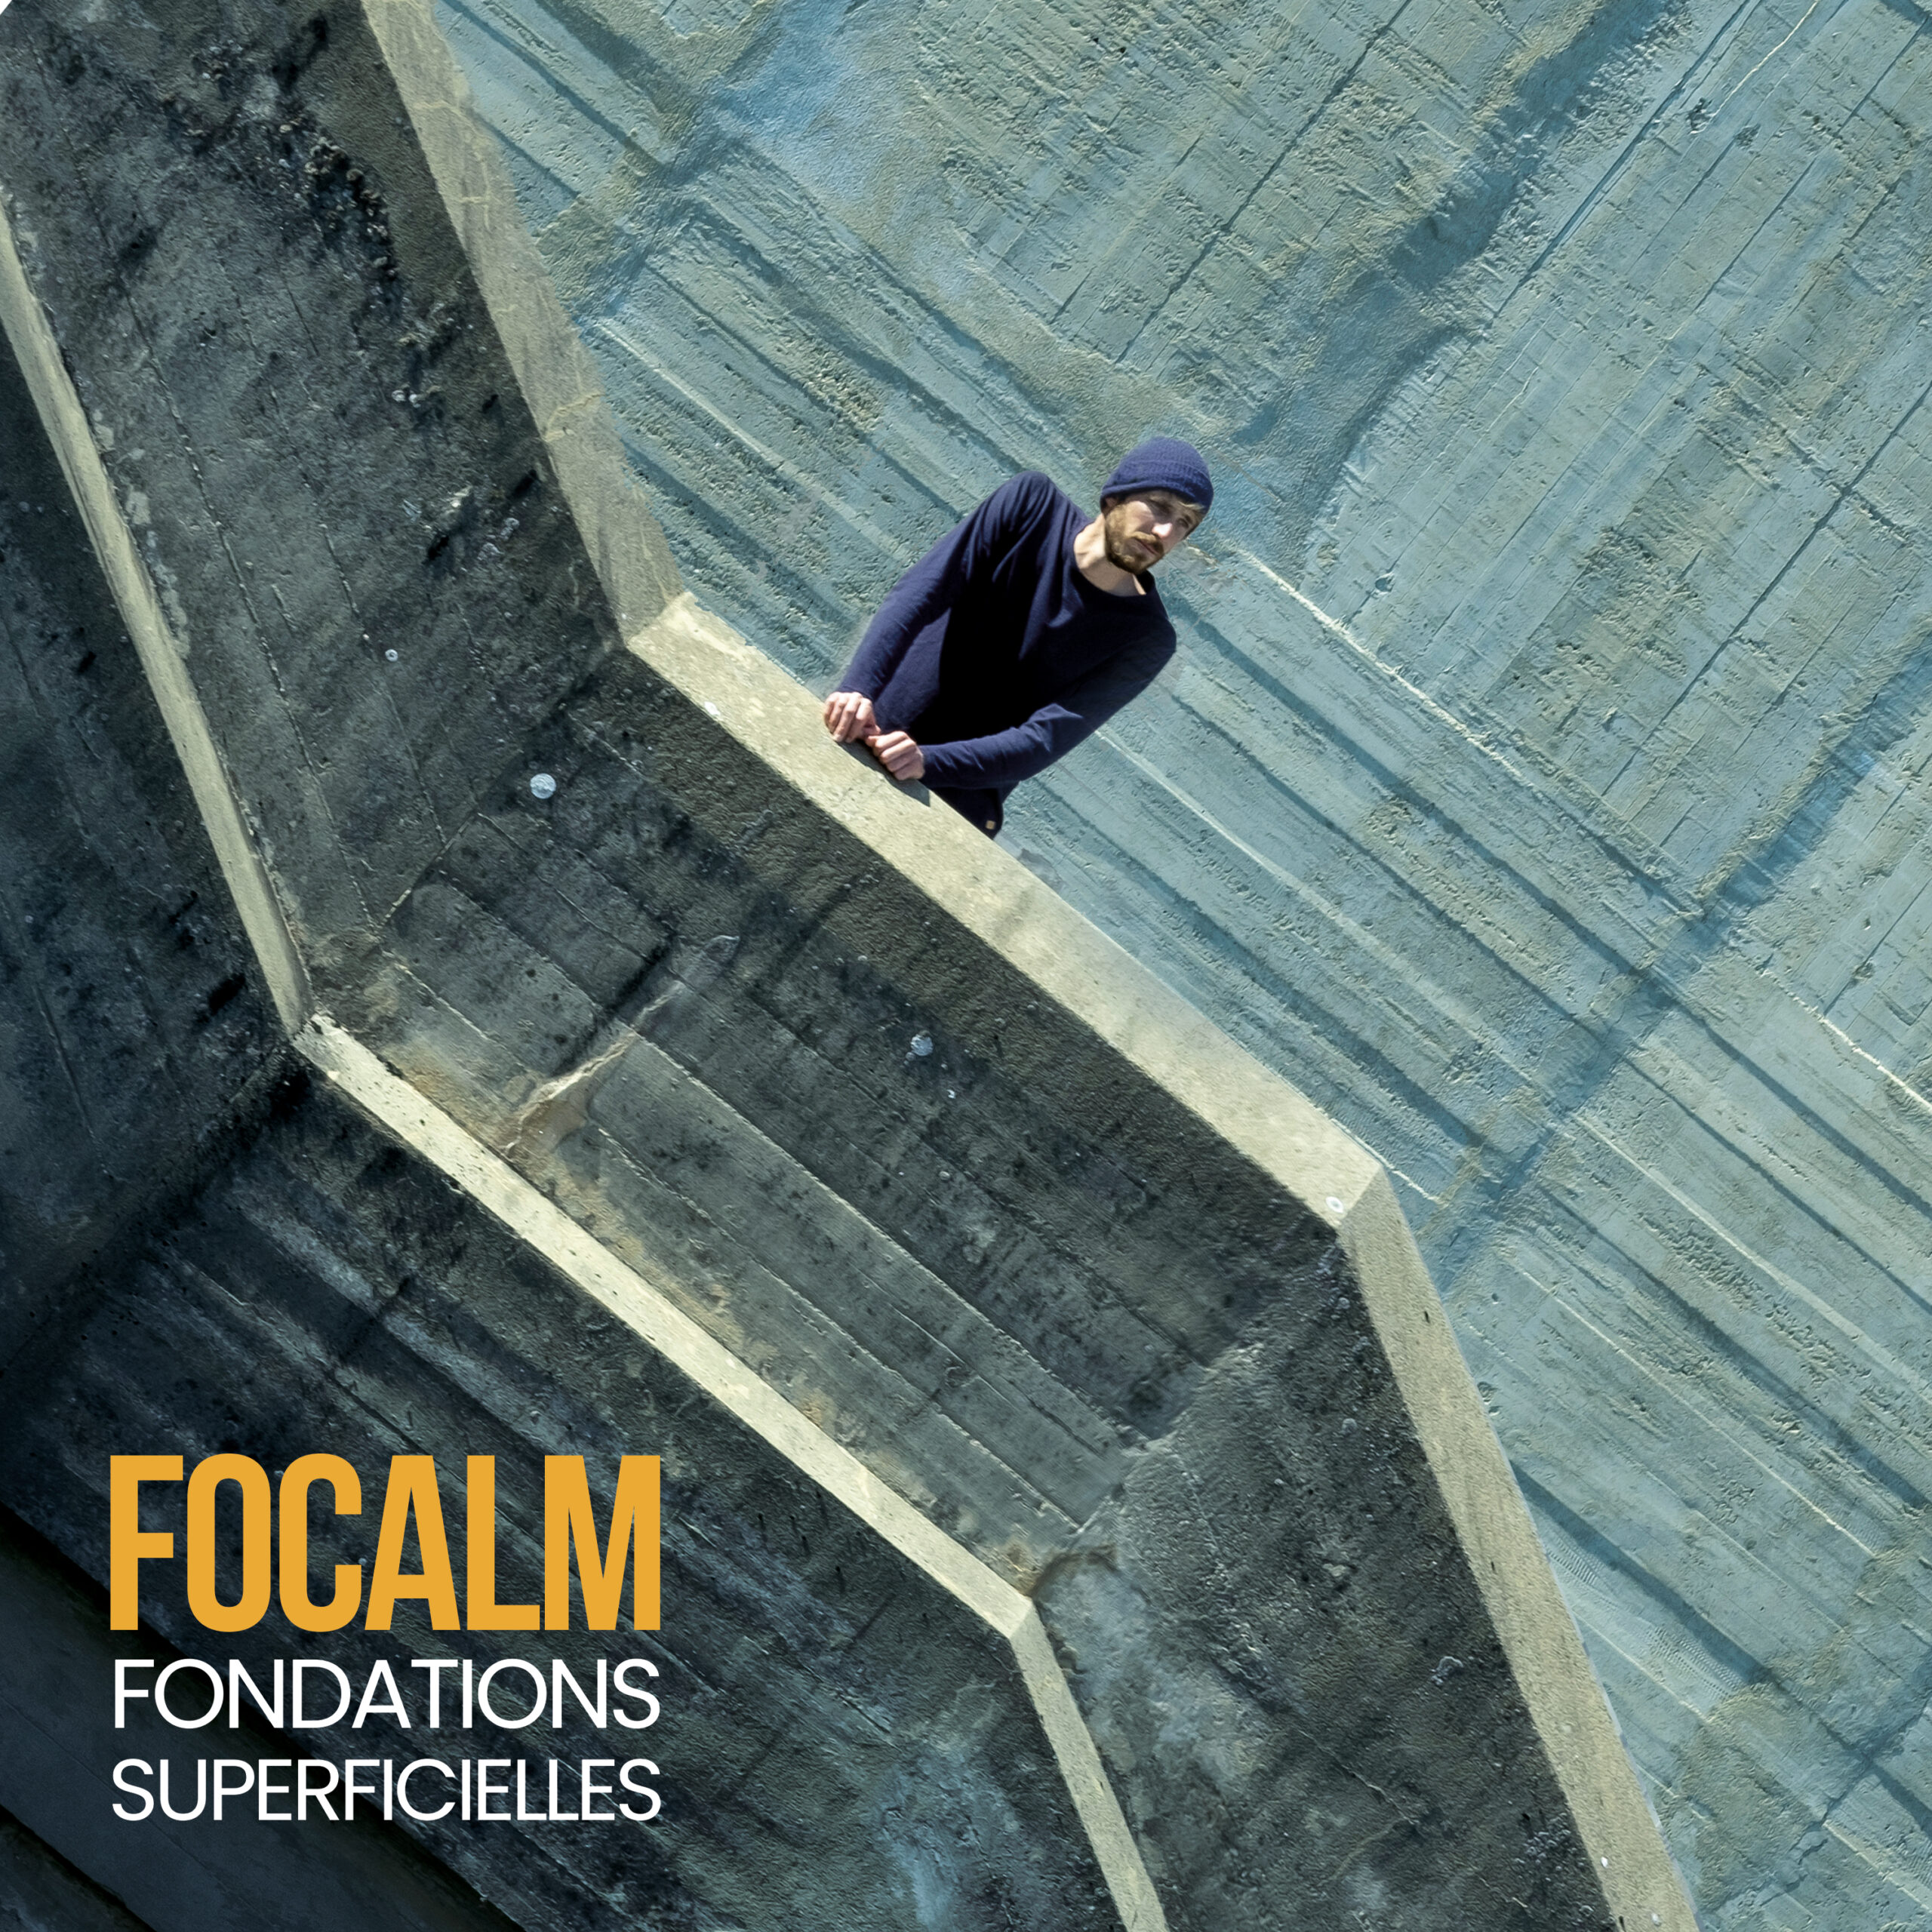 Benjamin Escot, FOCALM, nous présente »Fondations superficielles » son premier EP qui sortira le 25 avril sur toutes les plateformes.